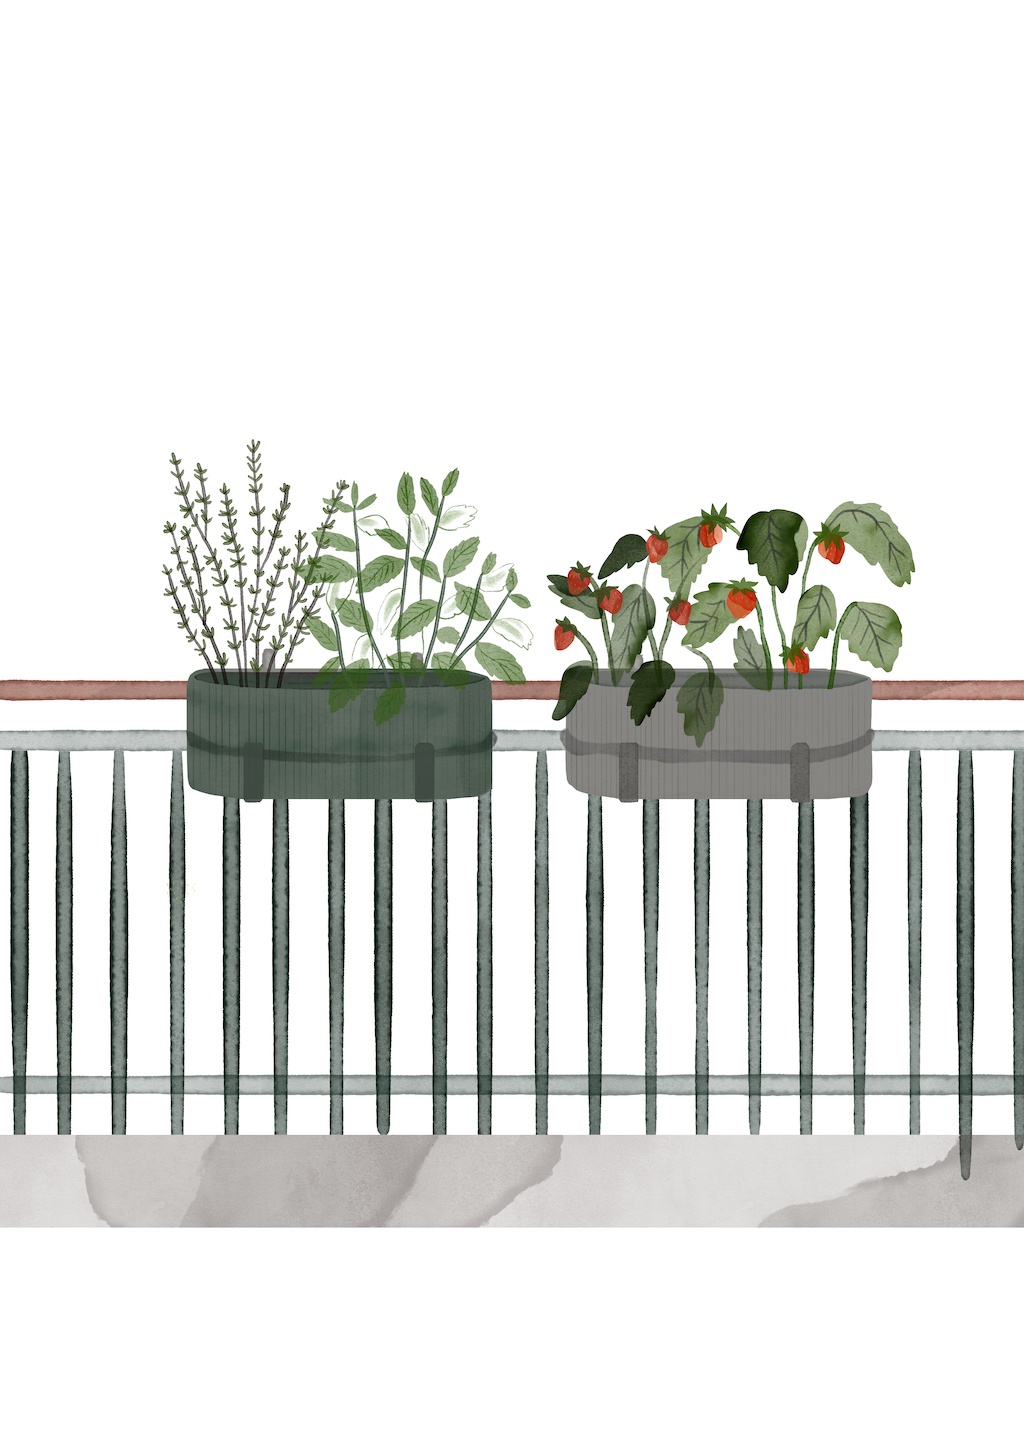 Illustration, Bau Balkonkasten mit bienenfreundlicher Bepflanzung